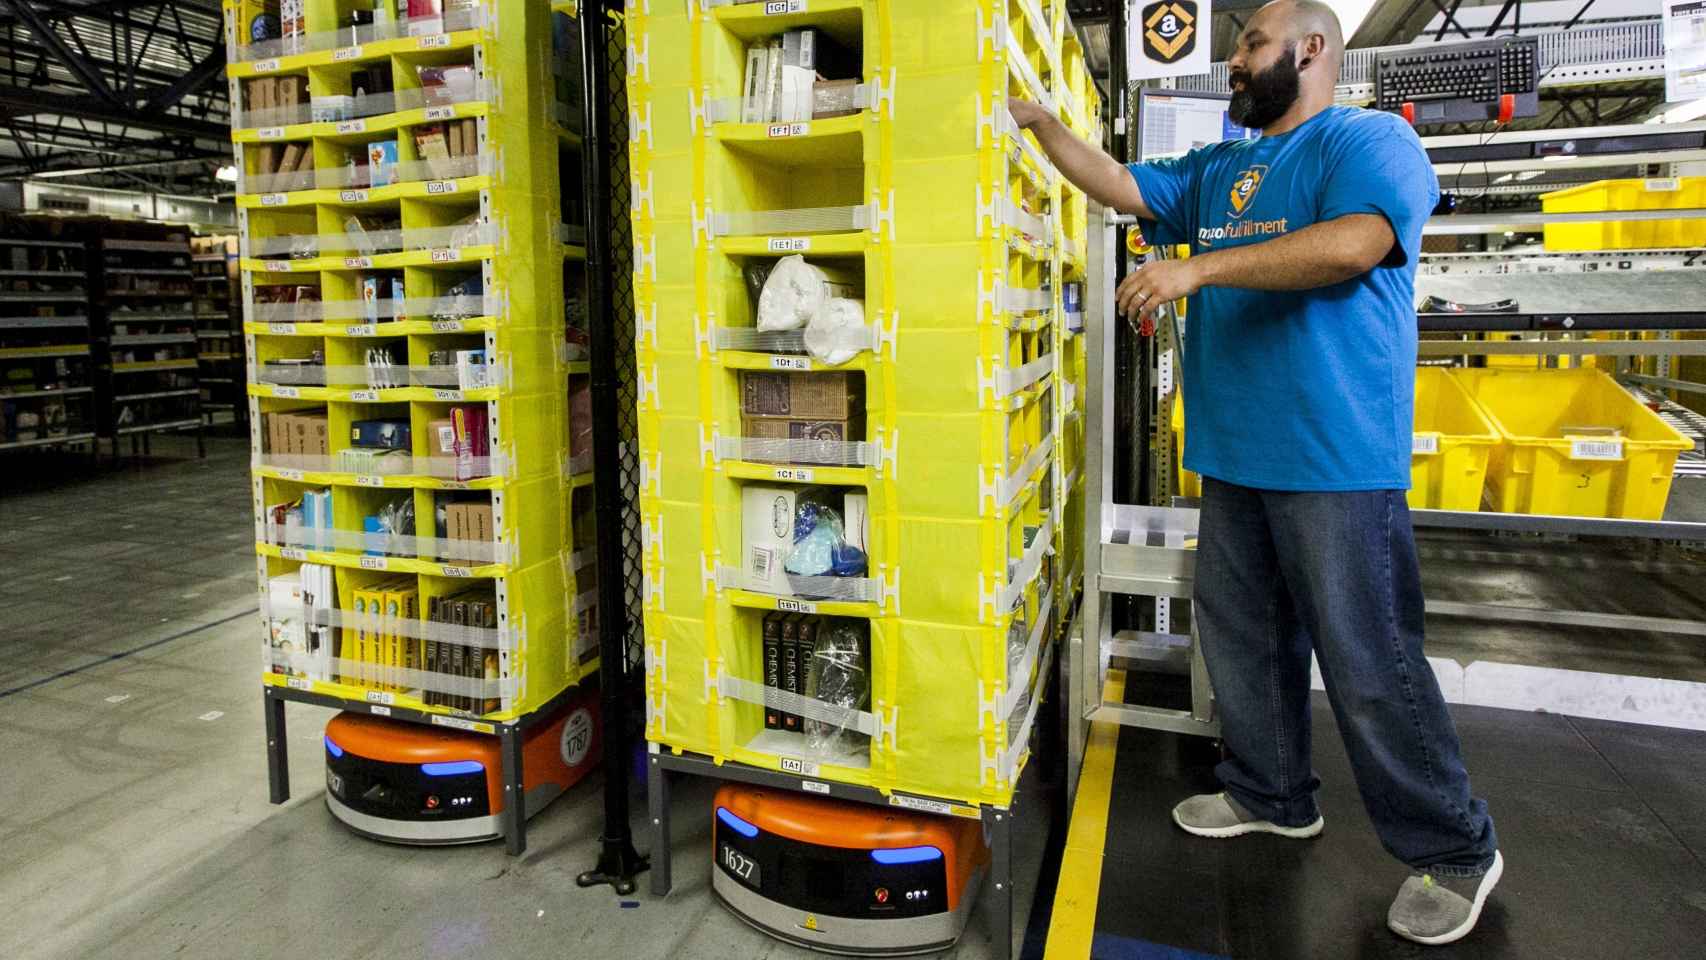 Los robots Kiva, de Amazon.